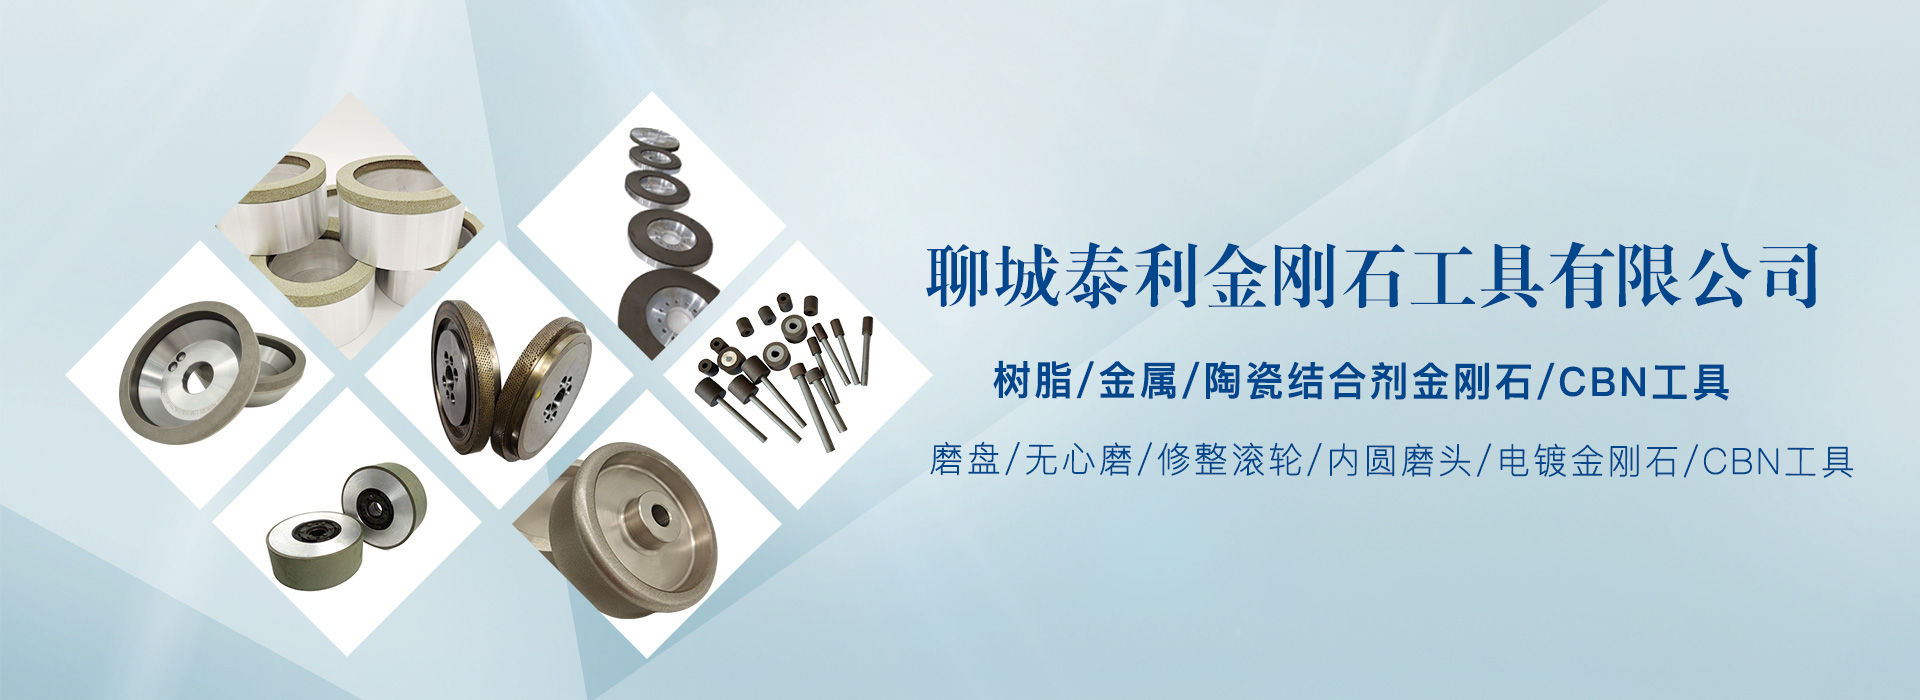 陶瓷结合剂金刚石/CBN工具系列